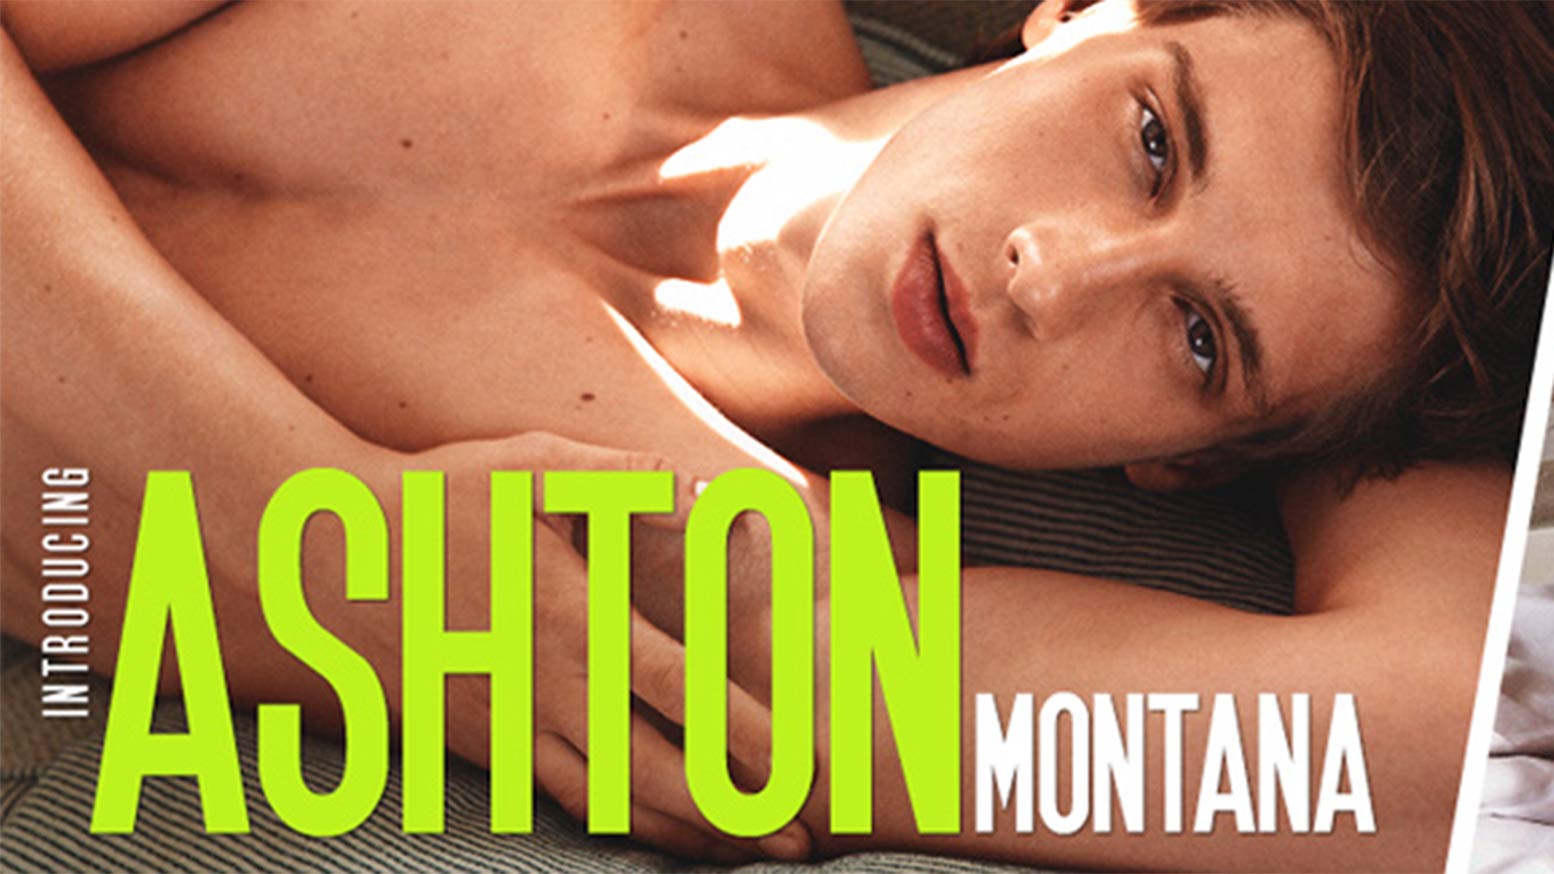 Introducing Ashton Montana